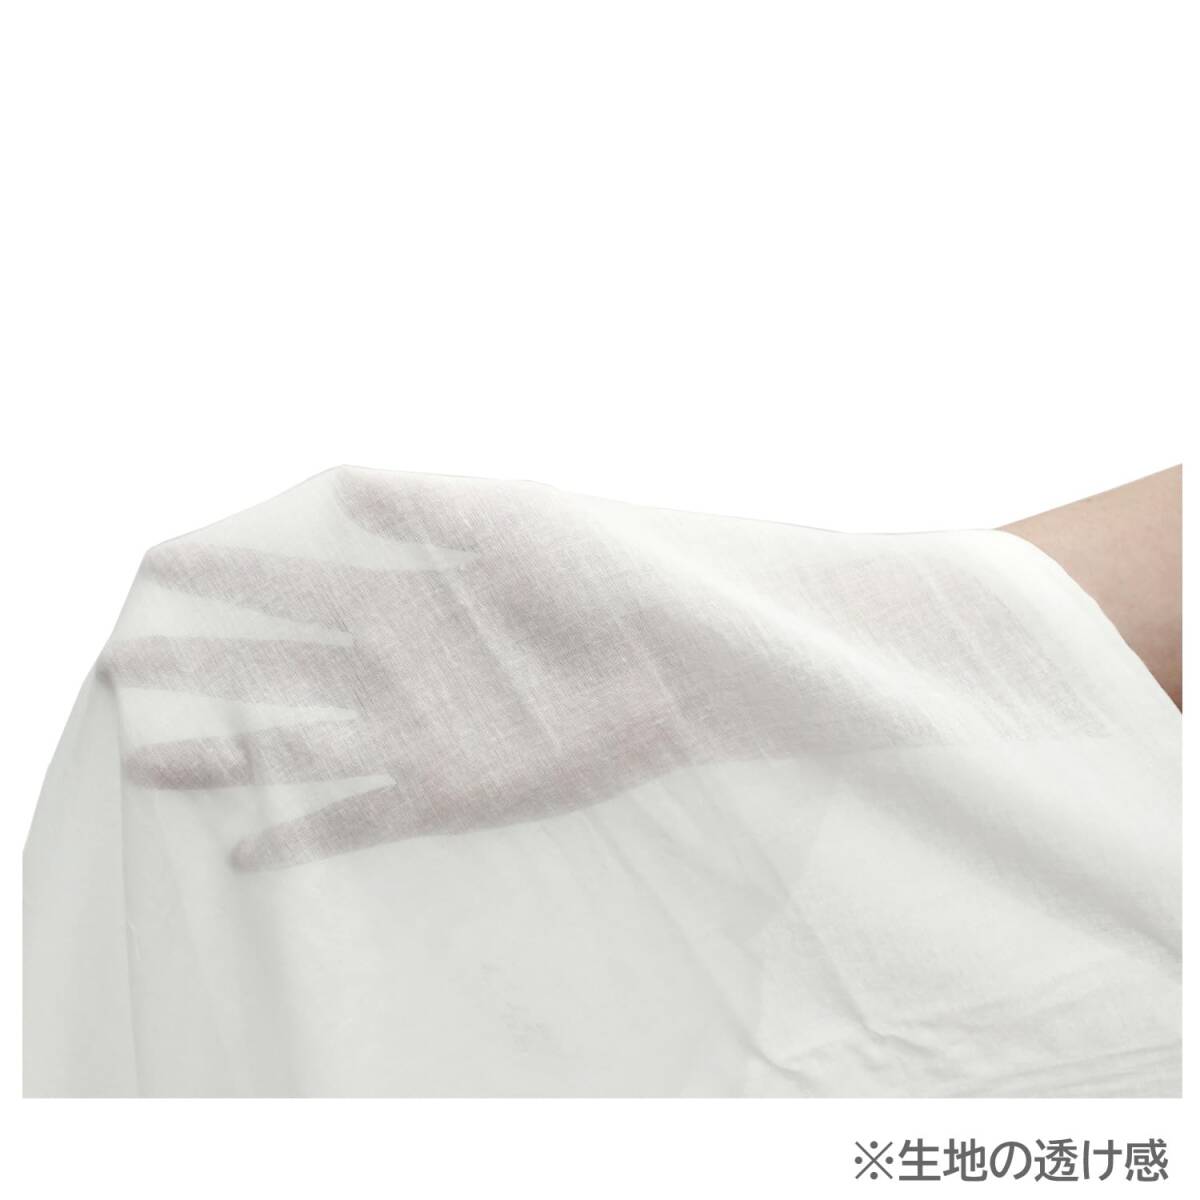 メリーナイト 肌布団カバー ガーゼ ホワイト シングル 約140×190cm 肌布団 キルトケット 綿100% 軽量 通気性 ふんわりやさしい肌_画像3